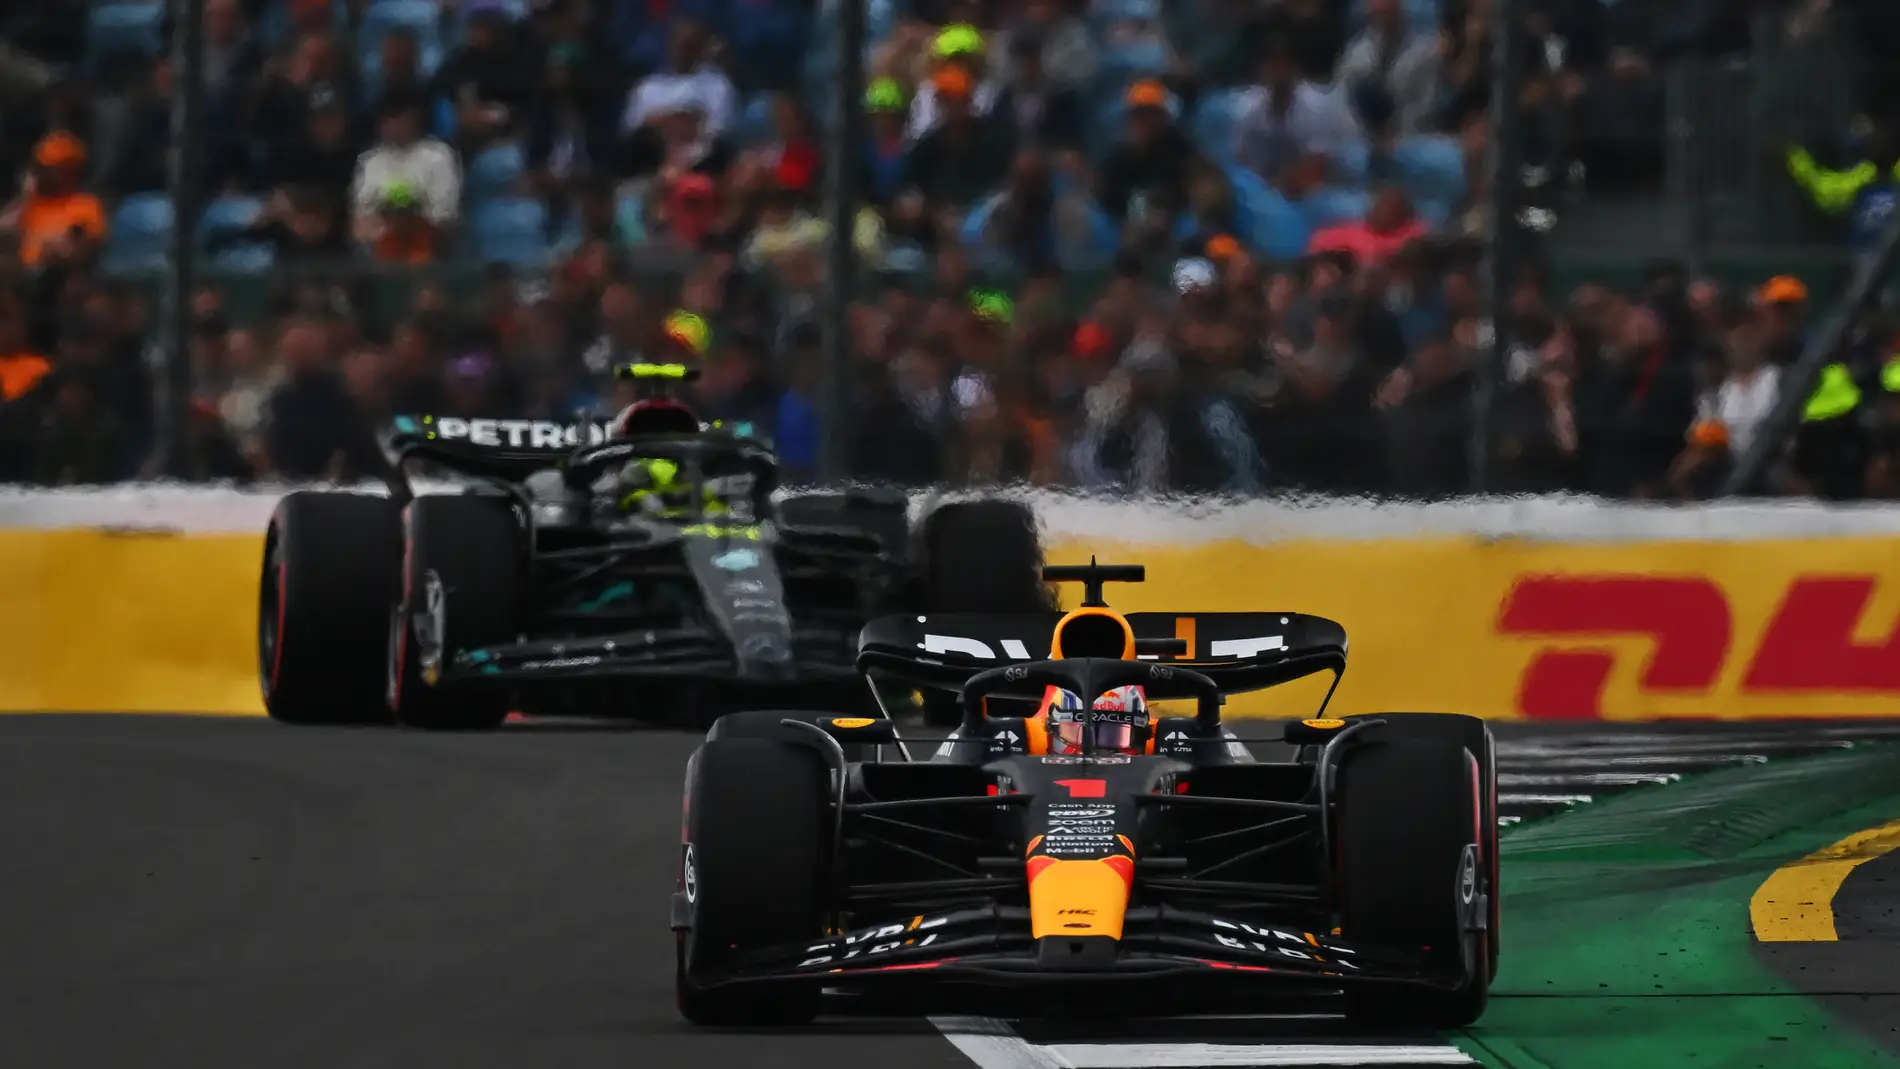 McLaren se cuela en la fiesta de Max Verstappen